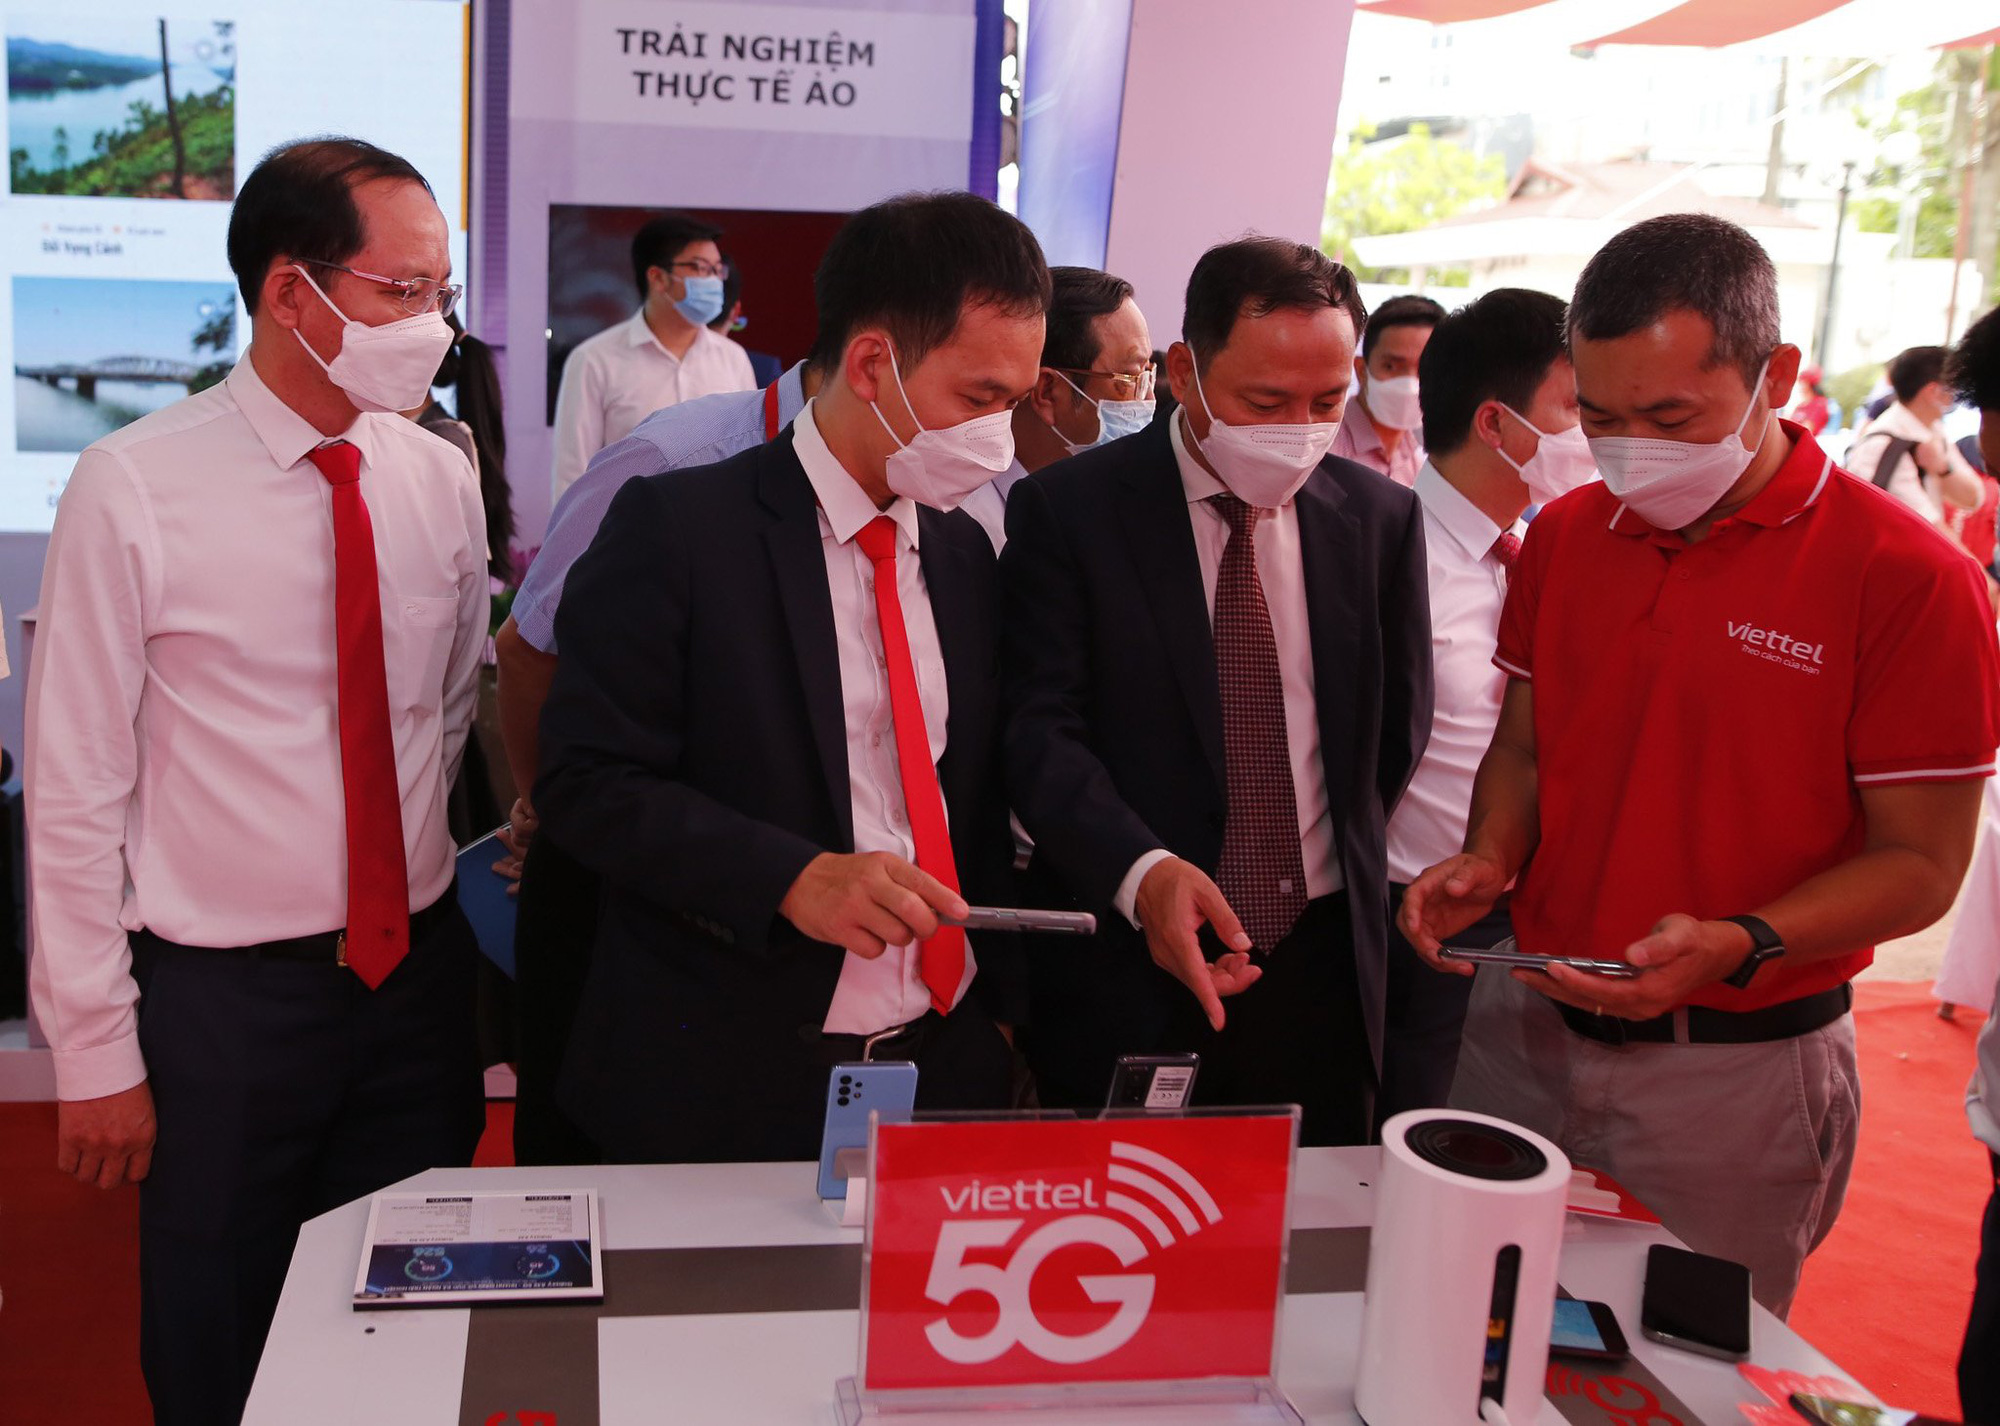 Viettel khai trương mạng 5G tại Thừa Thiên Huế, chính thức cung cấp 5G trên các thiết bị iPhone - Ảnh 3.